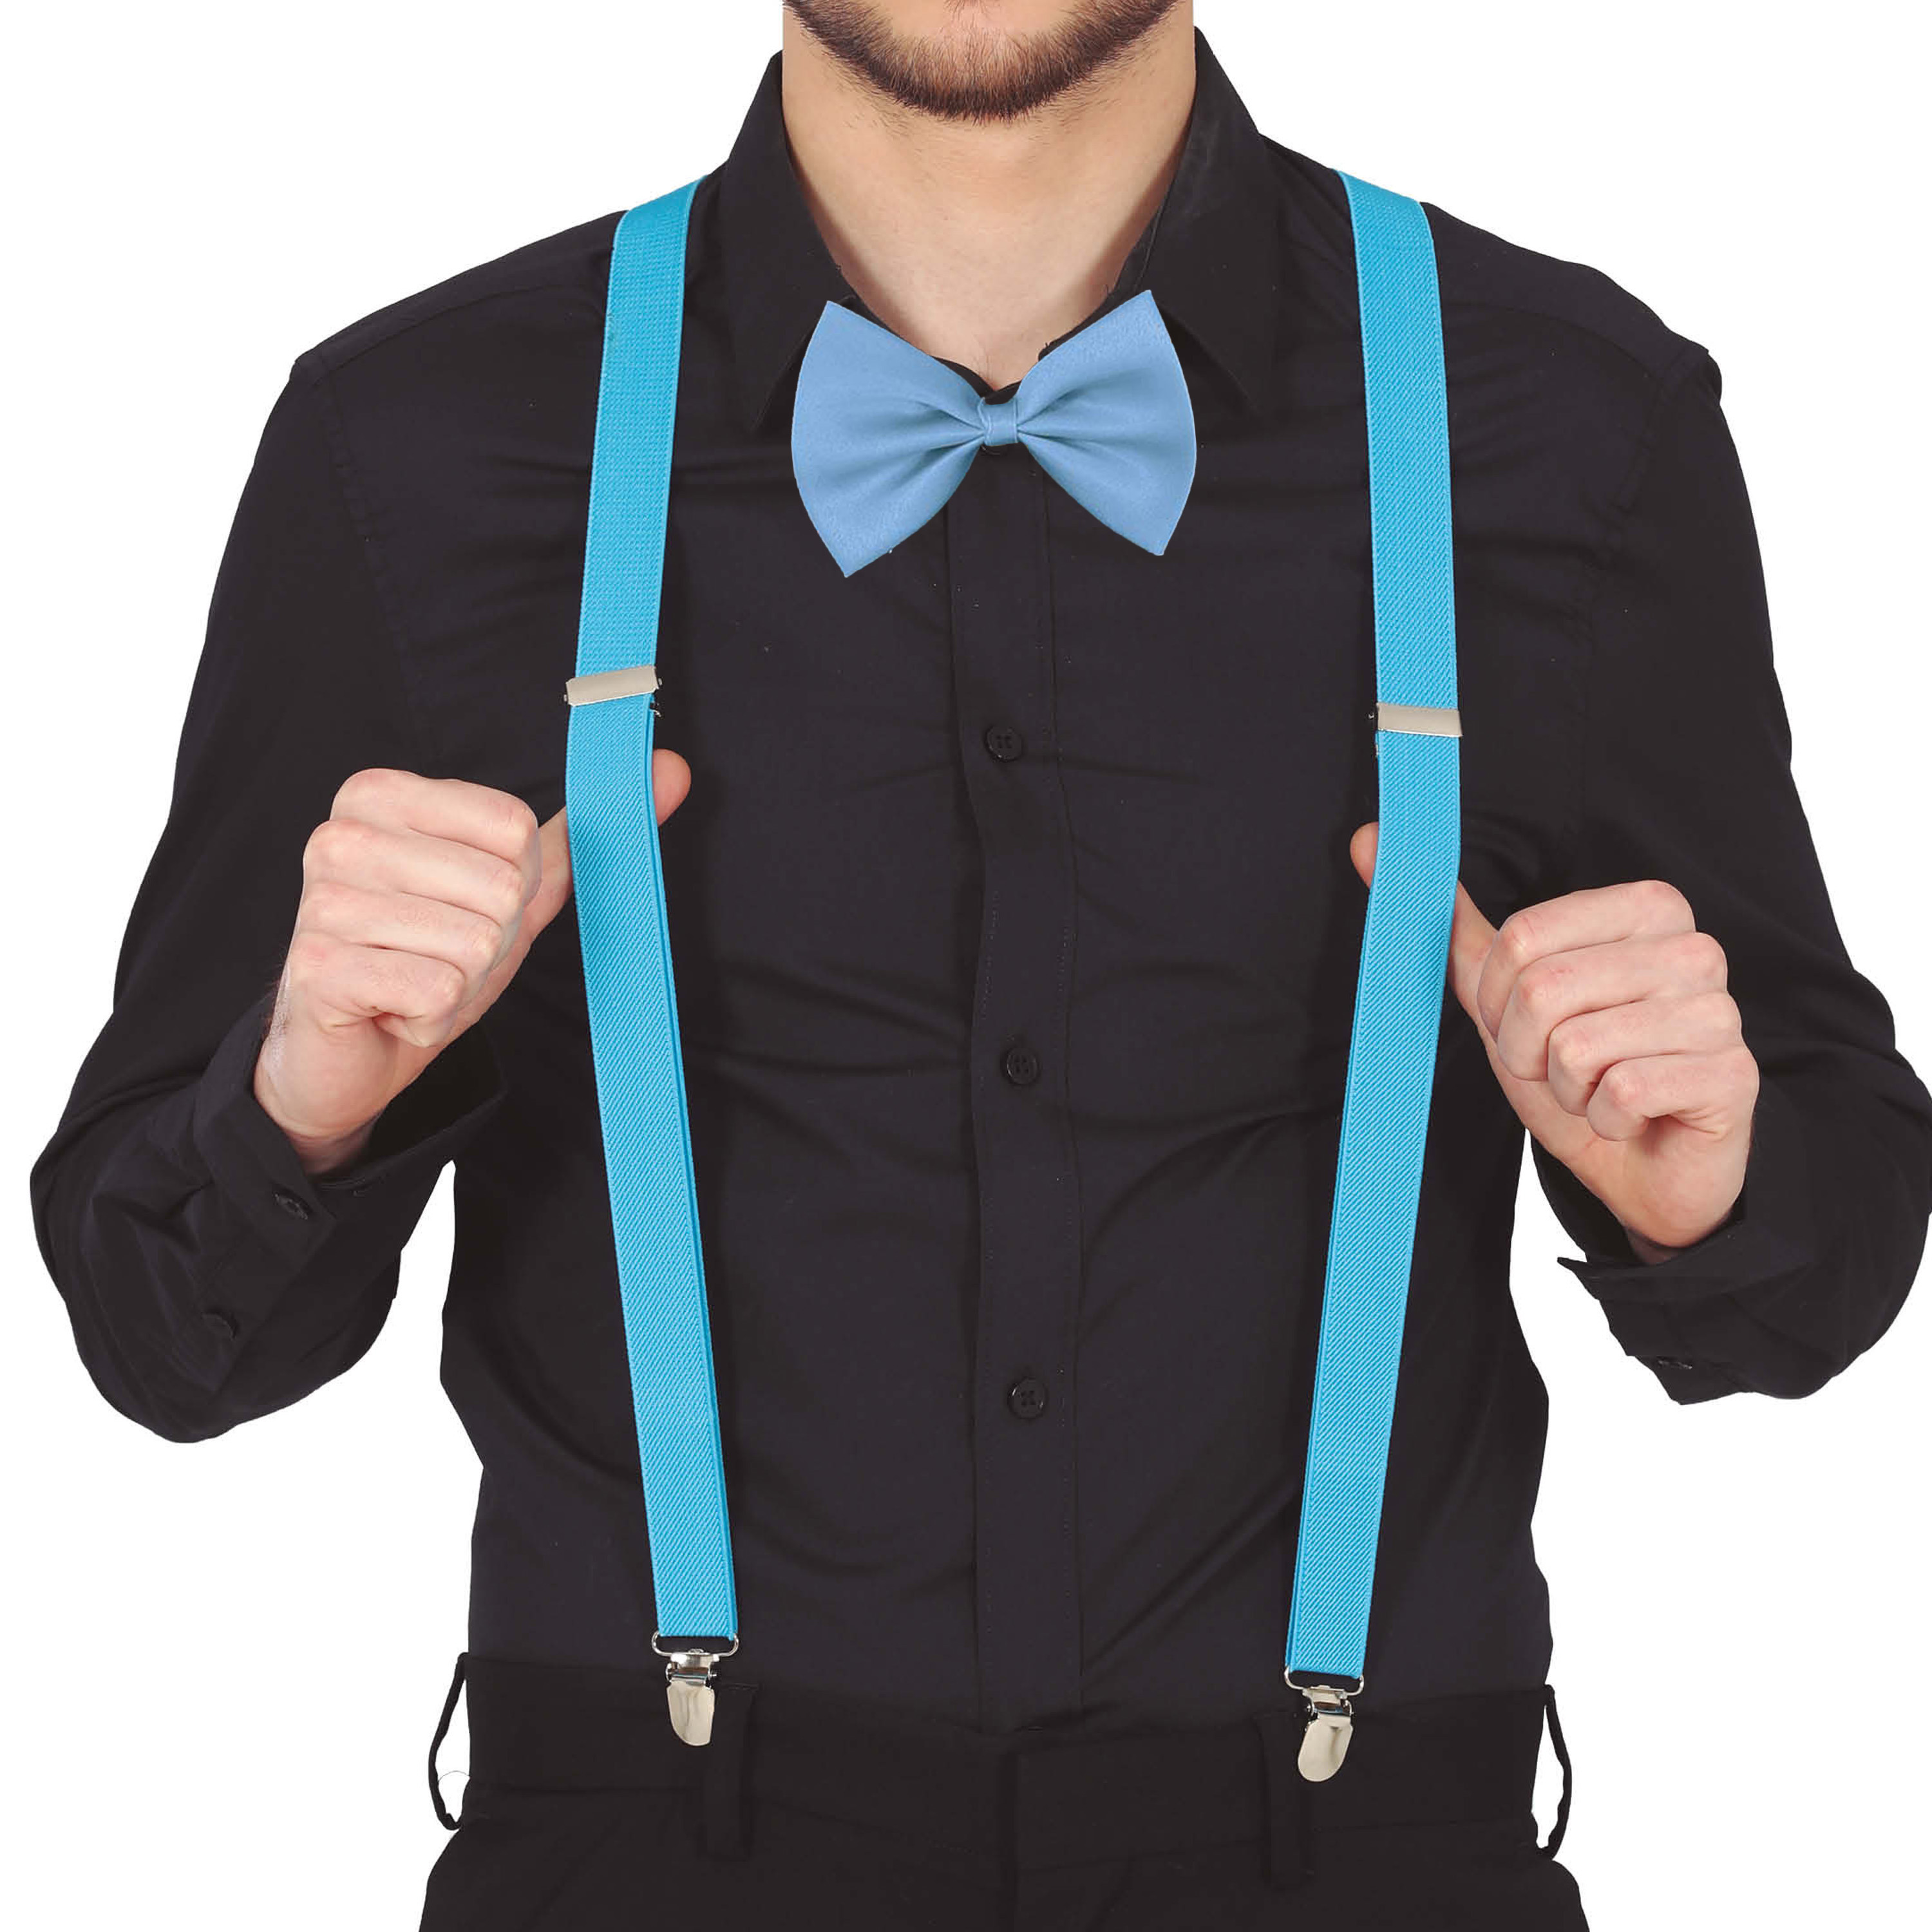 Carnaval verkleed bretels en strikje - blauw - volwassenen - verkleed accessoires -